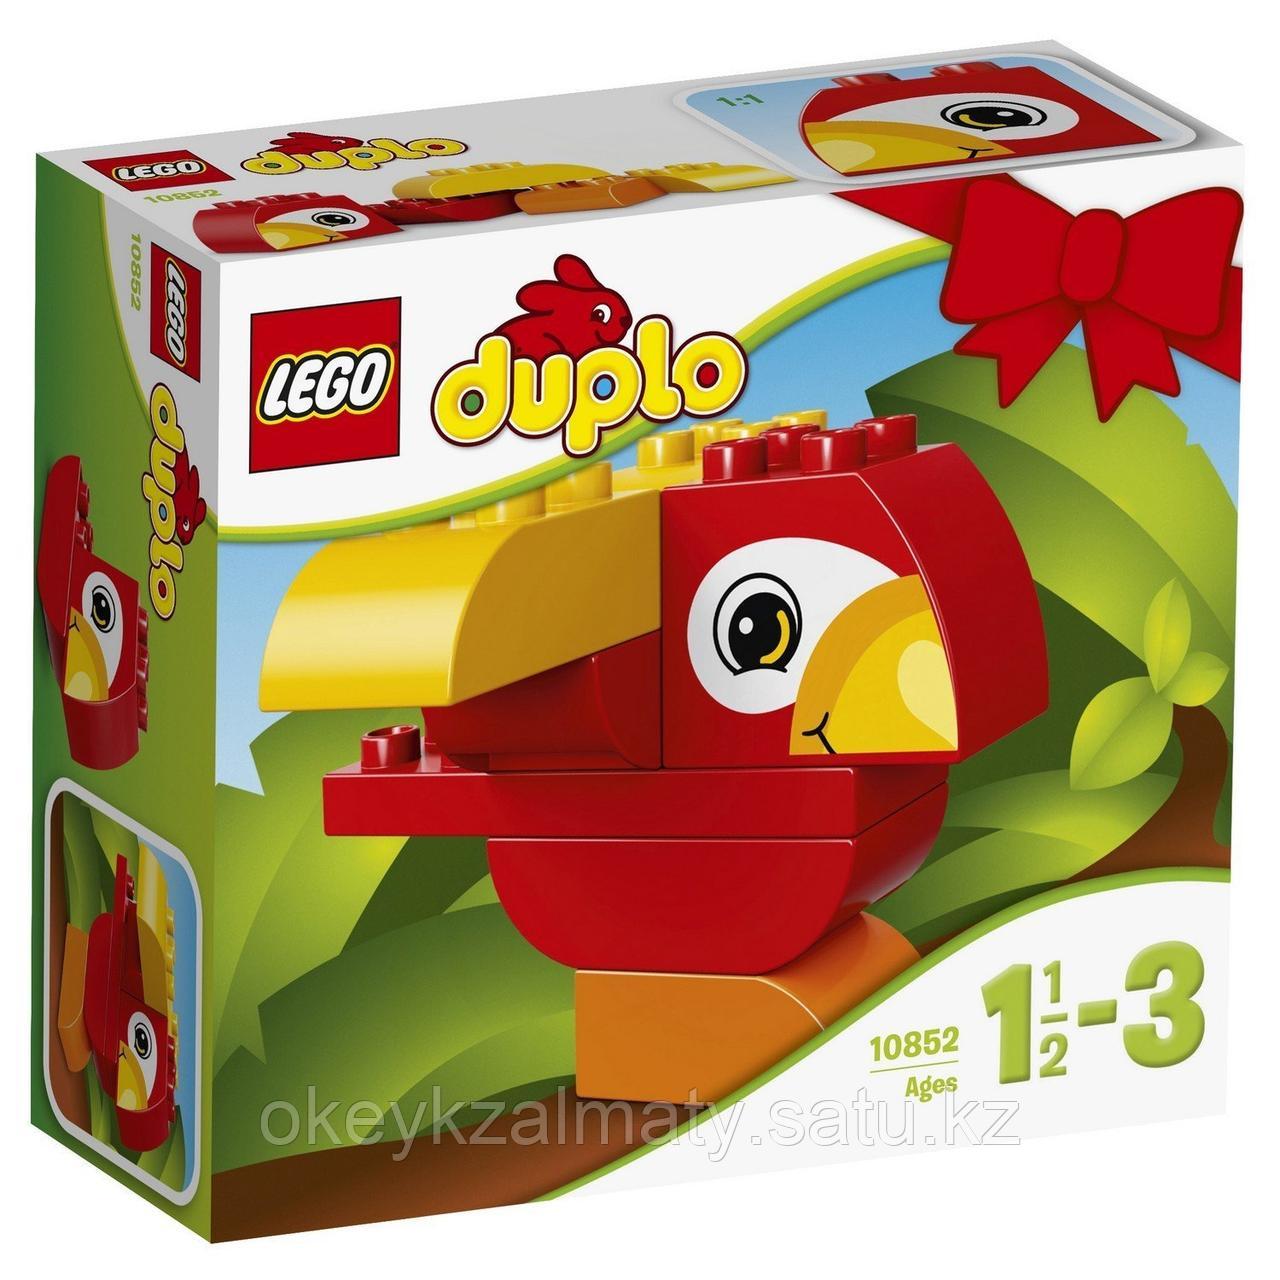 LEGO Duplo: Моя первая птичка 10852